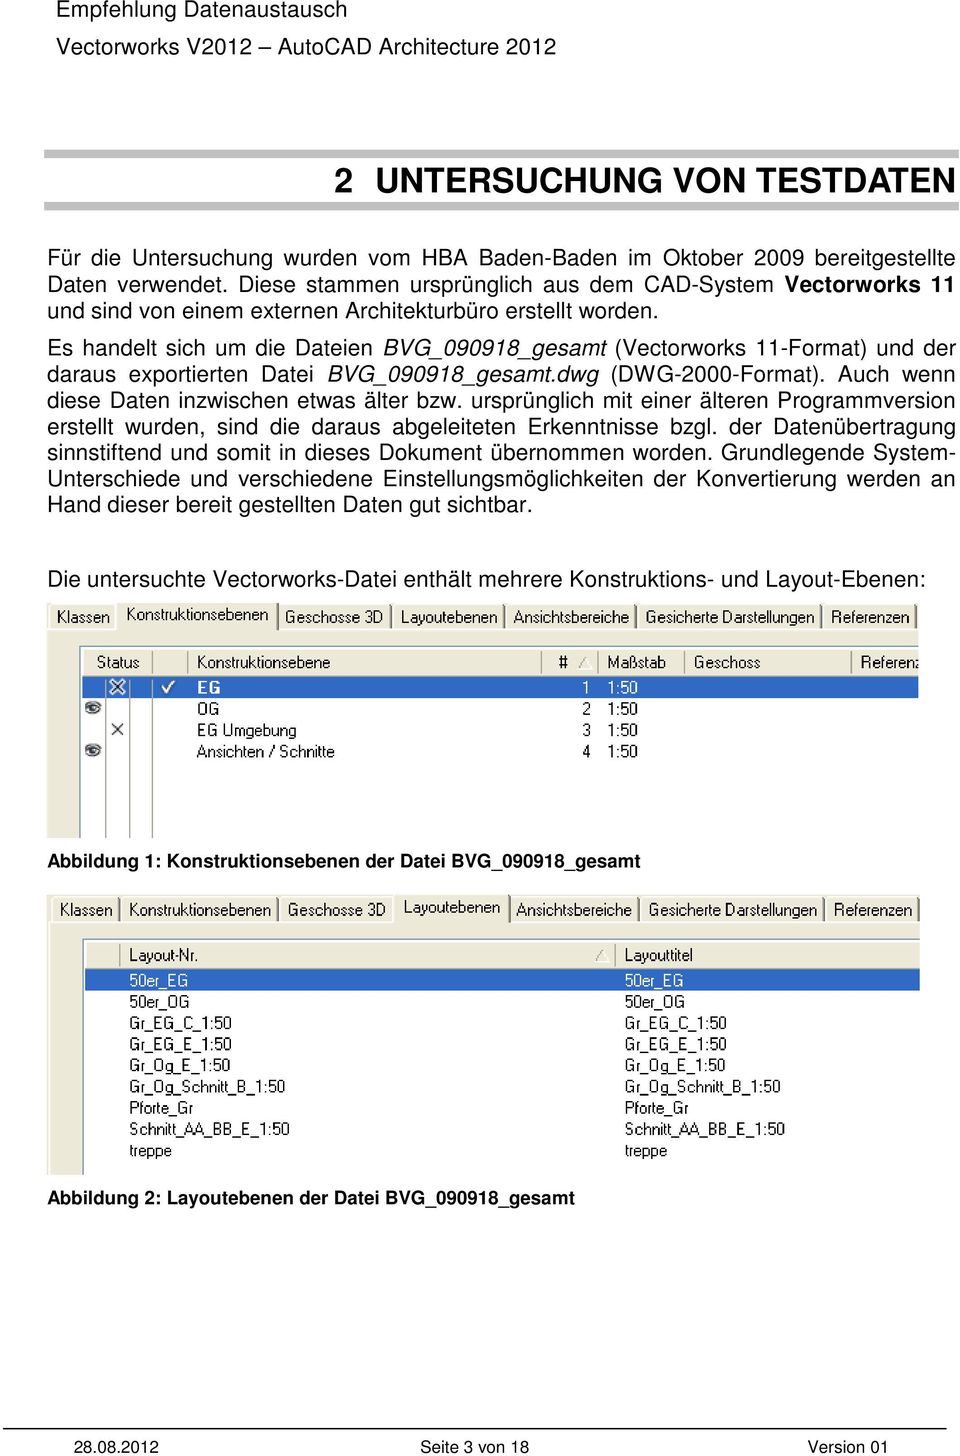 Es handelt sich um die Dateien BVG_090918_gesamt (Vectorworks 11-Format) und der daraus exportierten Datei BVG_090918_gesamt.dwg (DWG-2000-Format). Auch wenn diese Daten inzwischen etwas älter bzw.